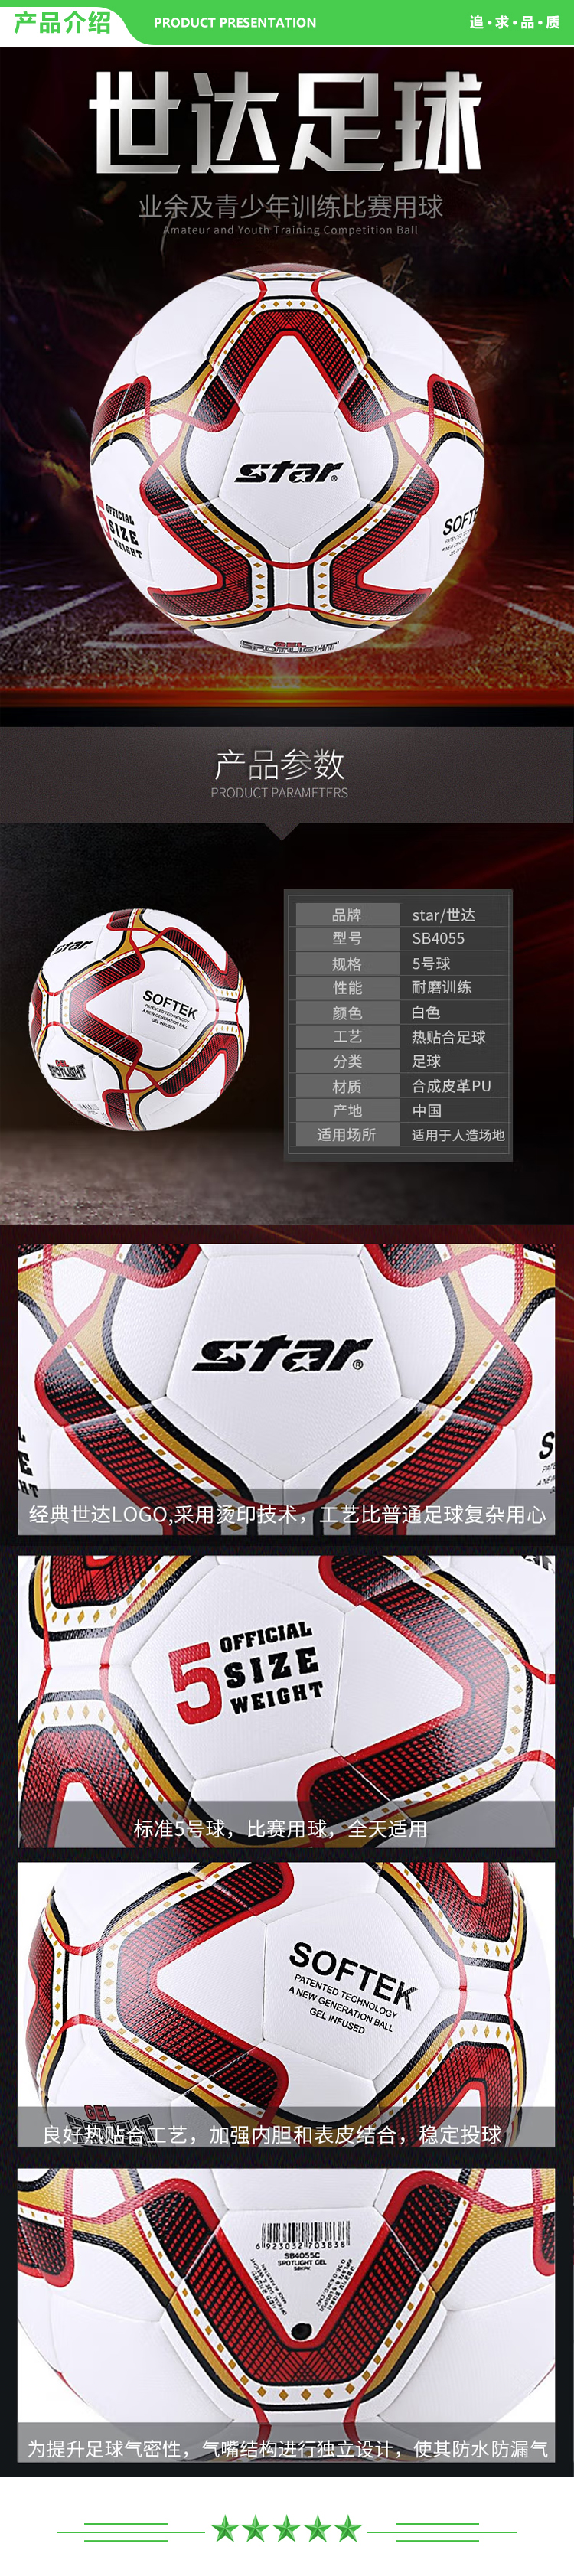 世达 star SB4055 足球标准5号球青少年训练球耐磨防水比赛用球 .jpg